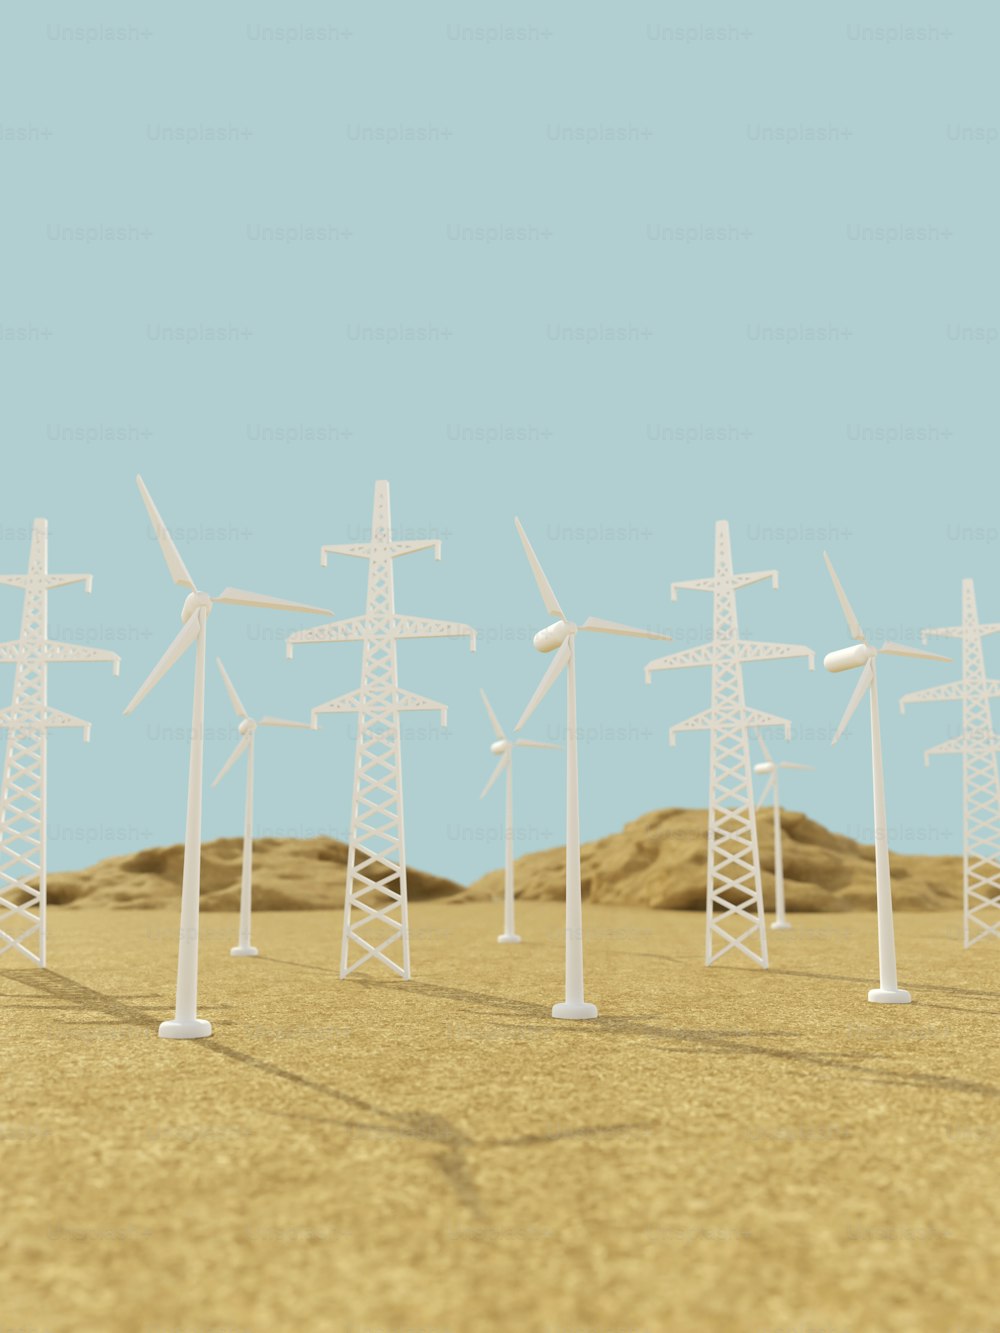 Una fila di turbine eoliche in un deserto